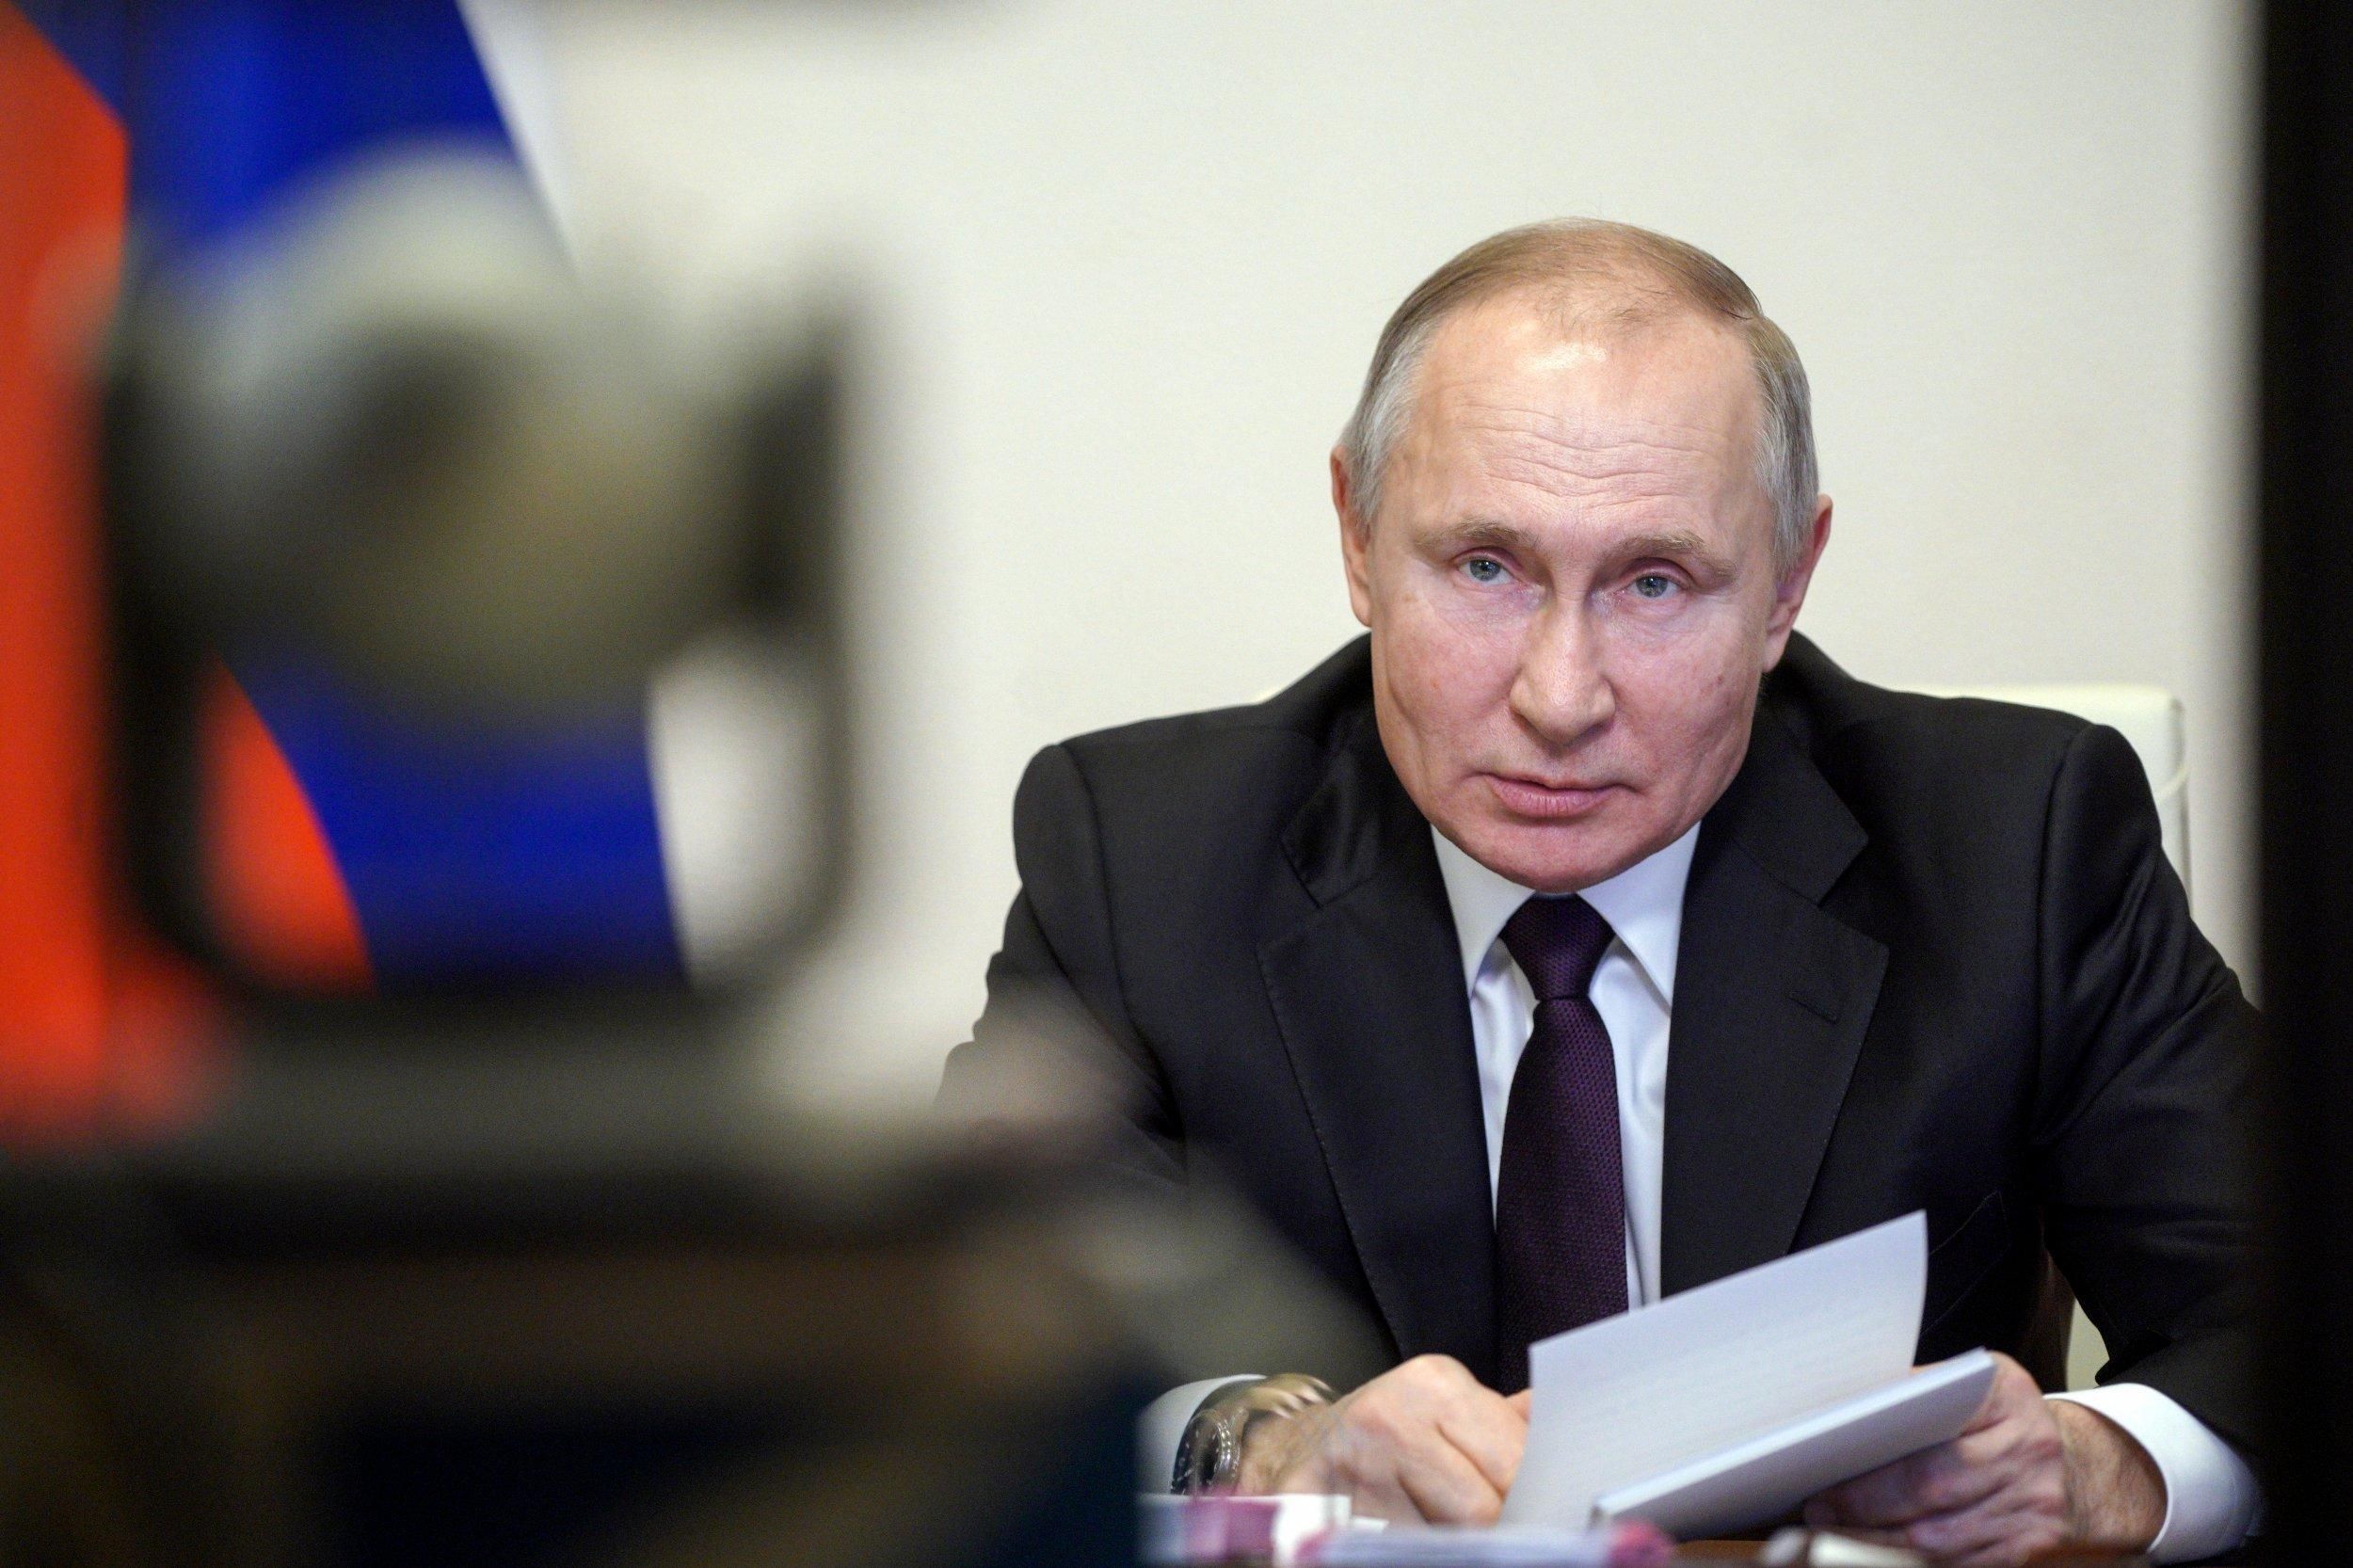 Путин действует иррационально, – политолог о возможных планах нападения России на Харьков